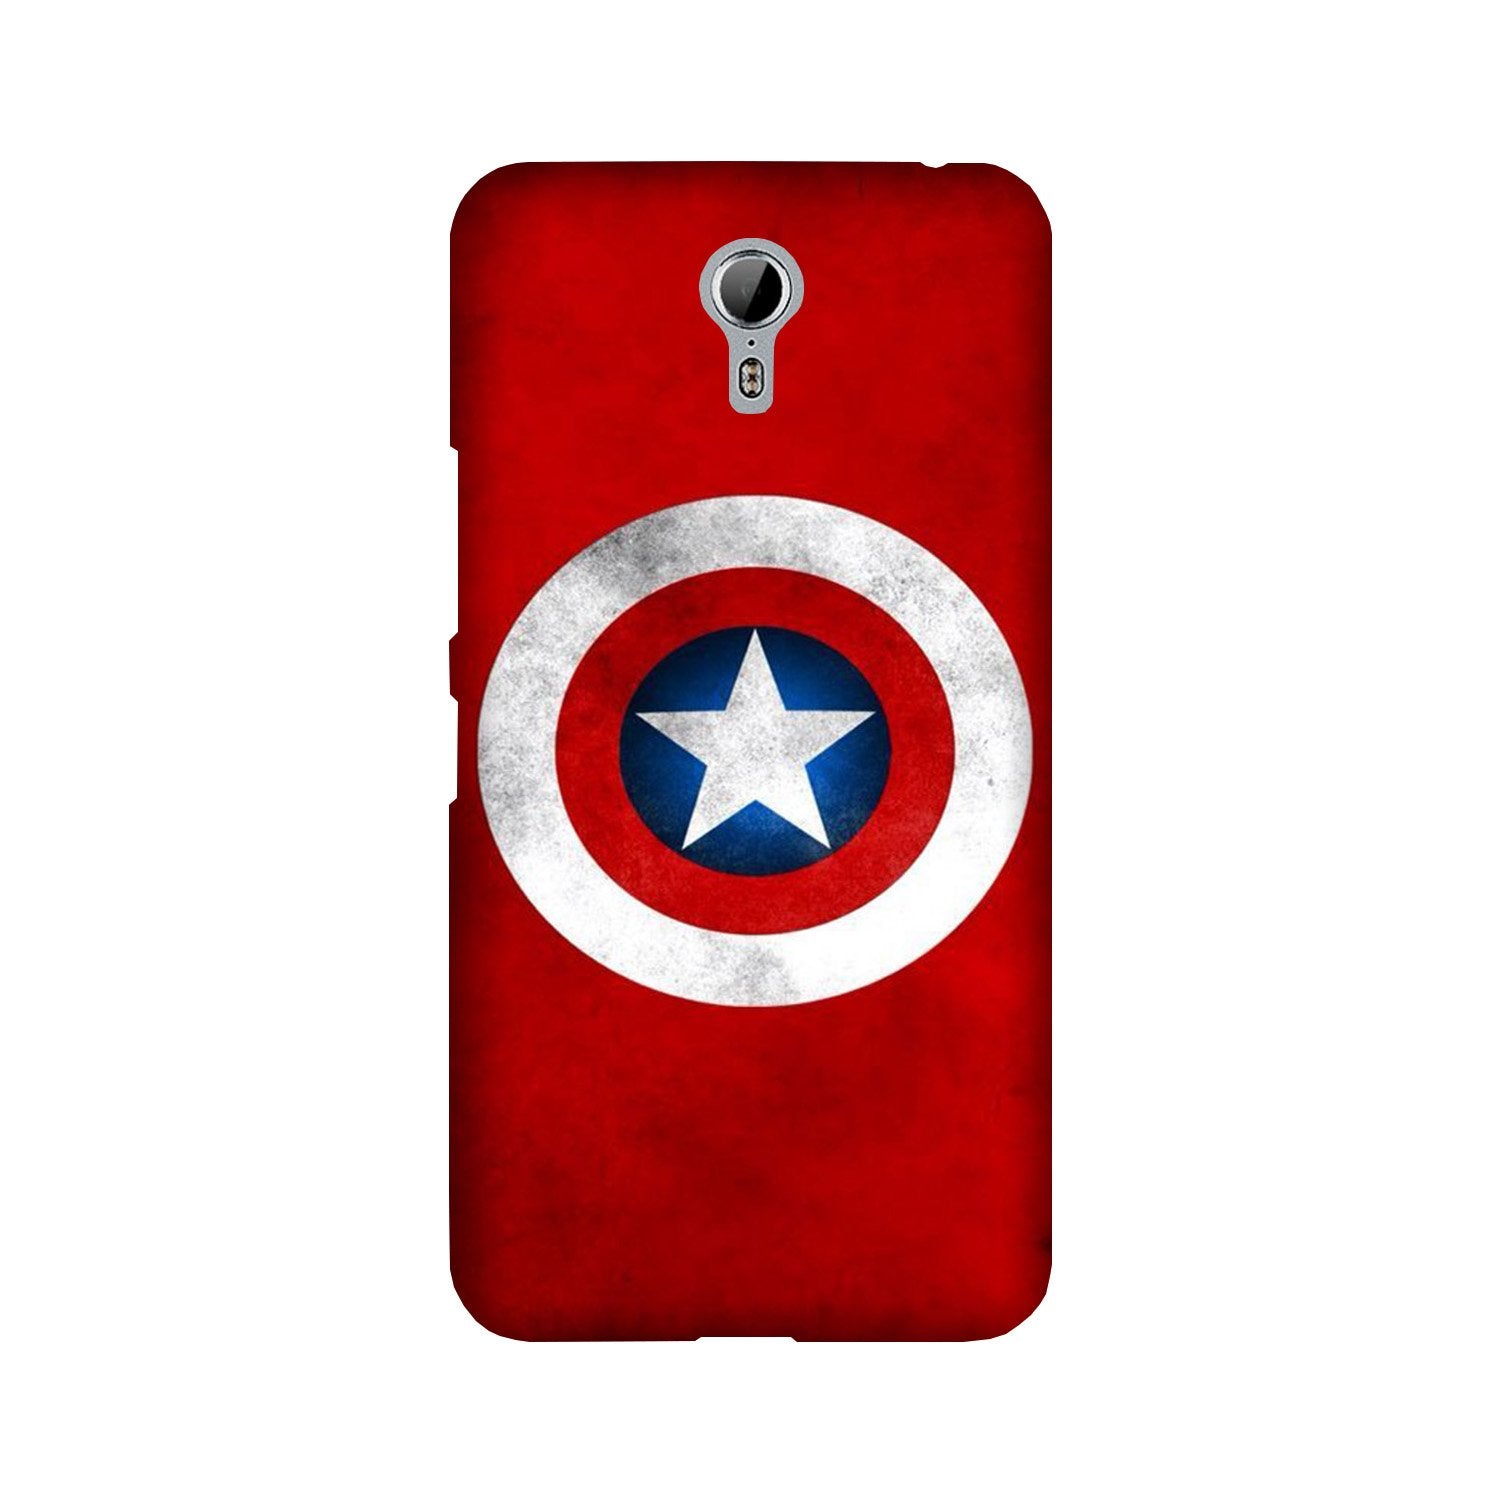 Captain America Case for Lenovo Zuk Z1 (Design No. 249)